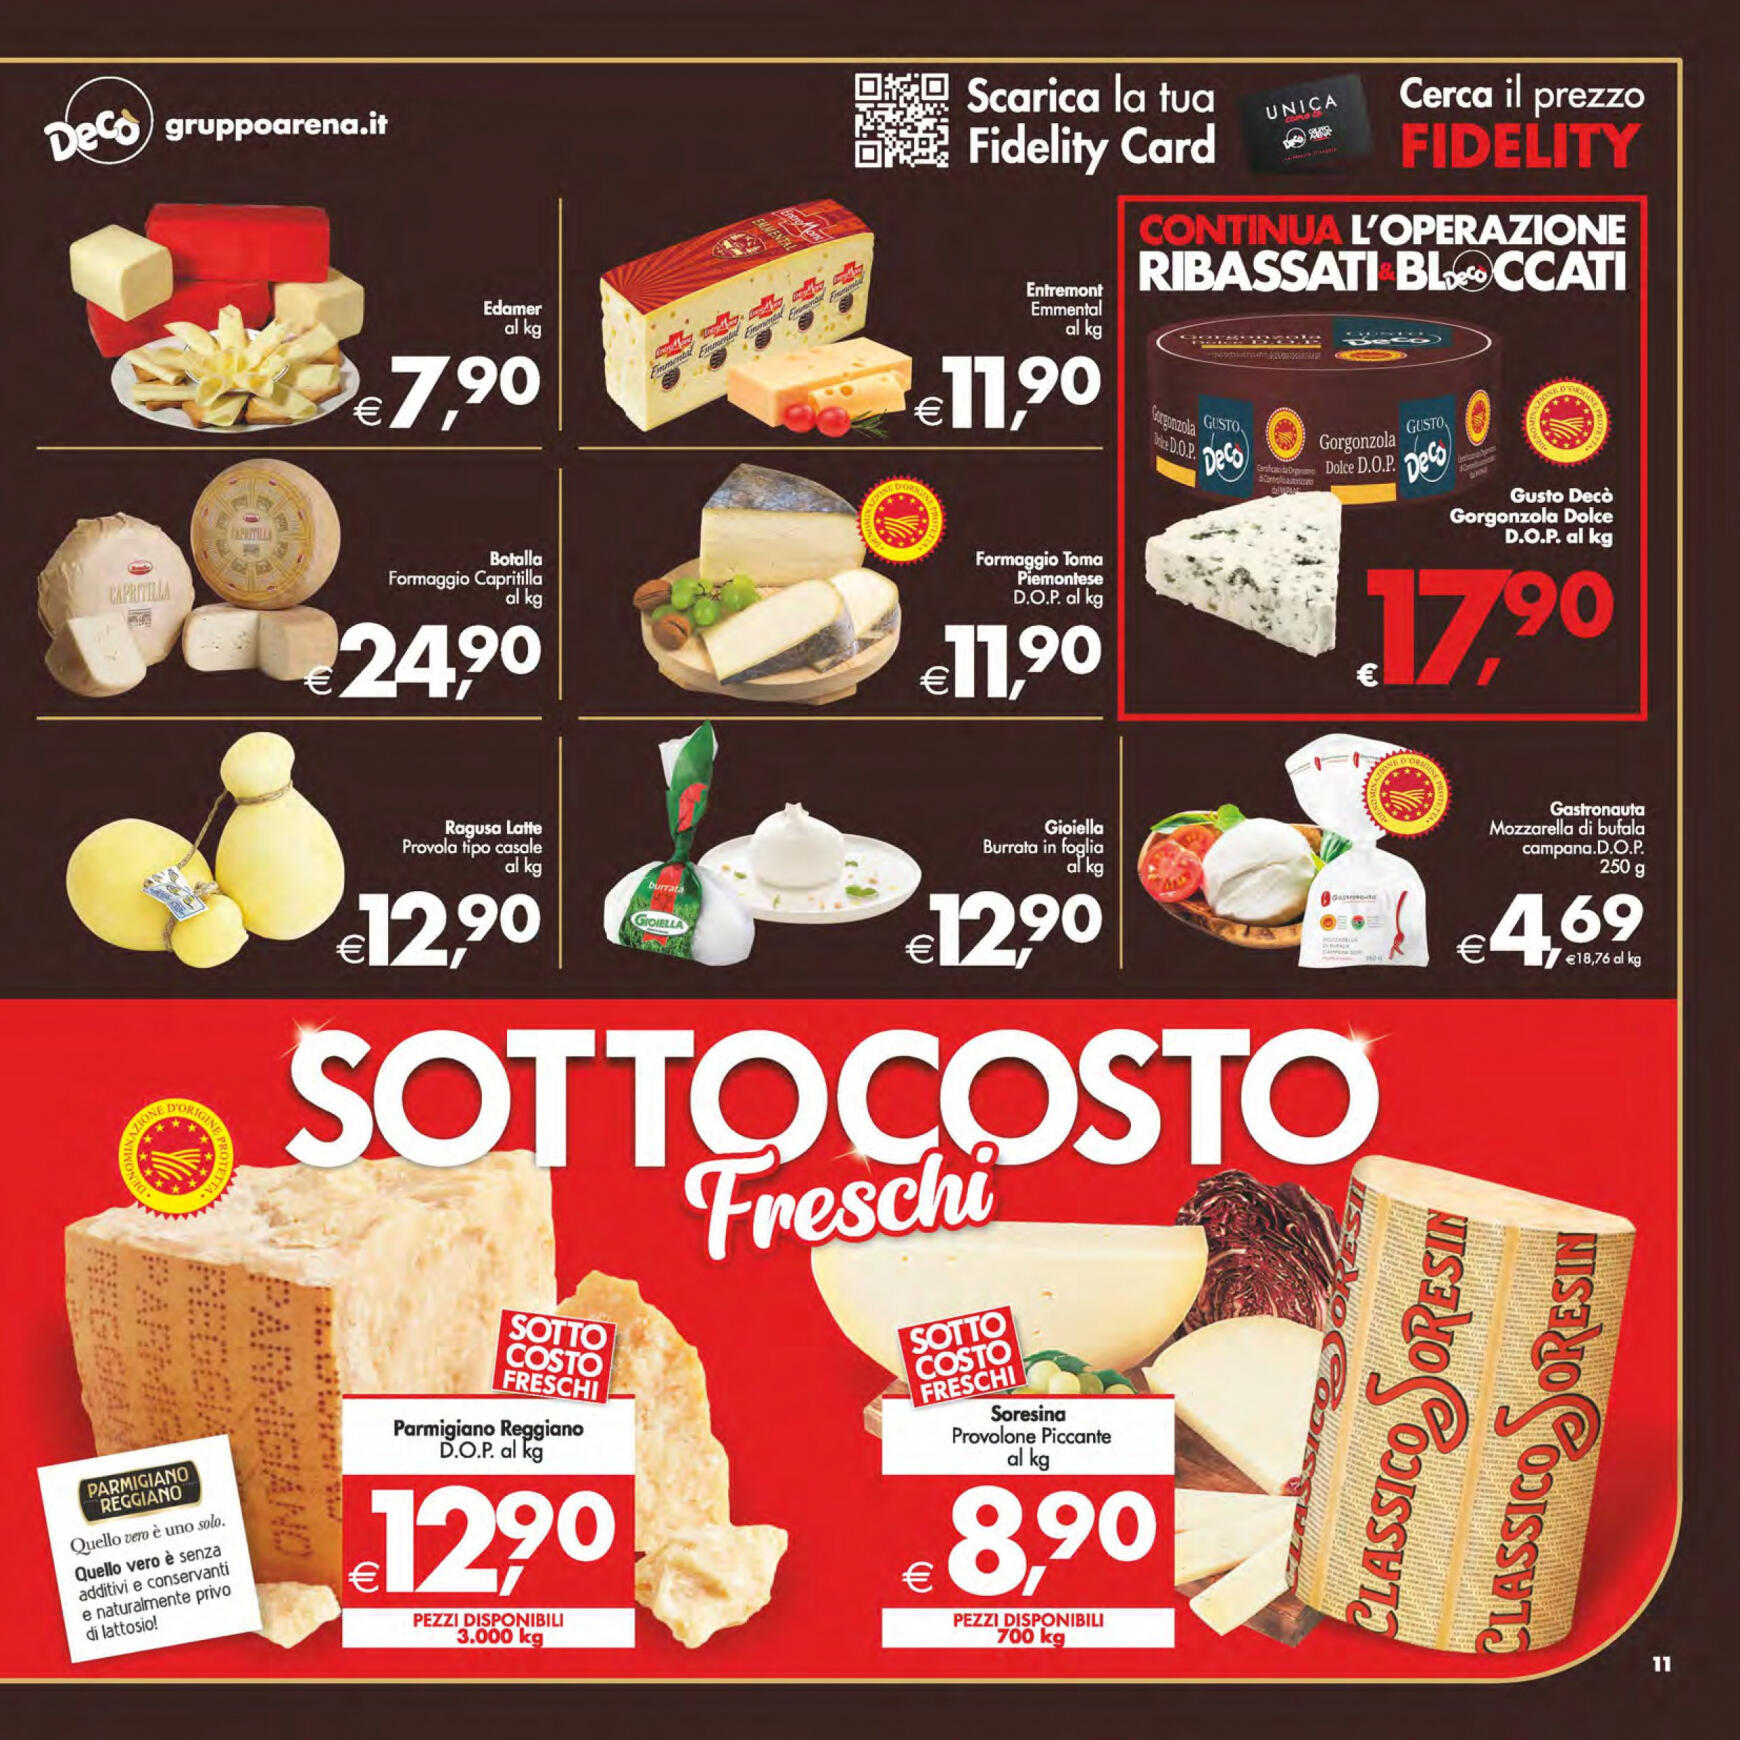 deco - Nuovo volantino Decò - Maxistore/Supermercati/Local 14.05. - 23.05. - page: 11